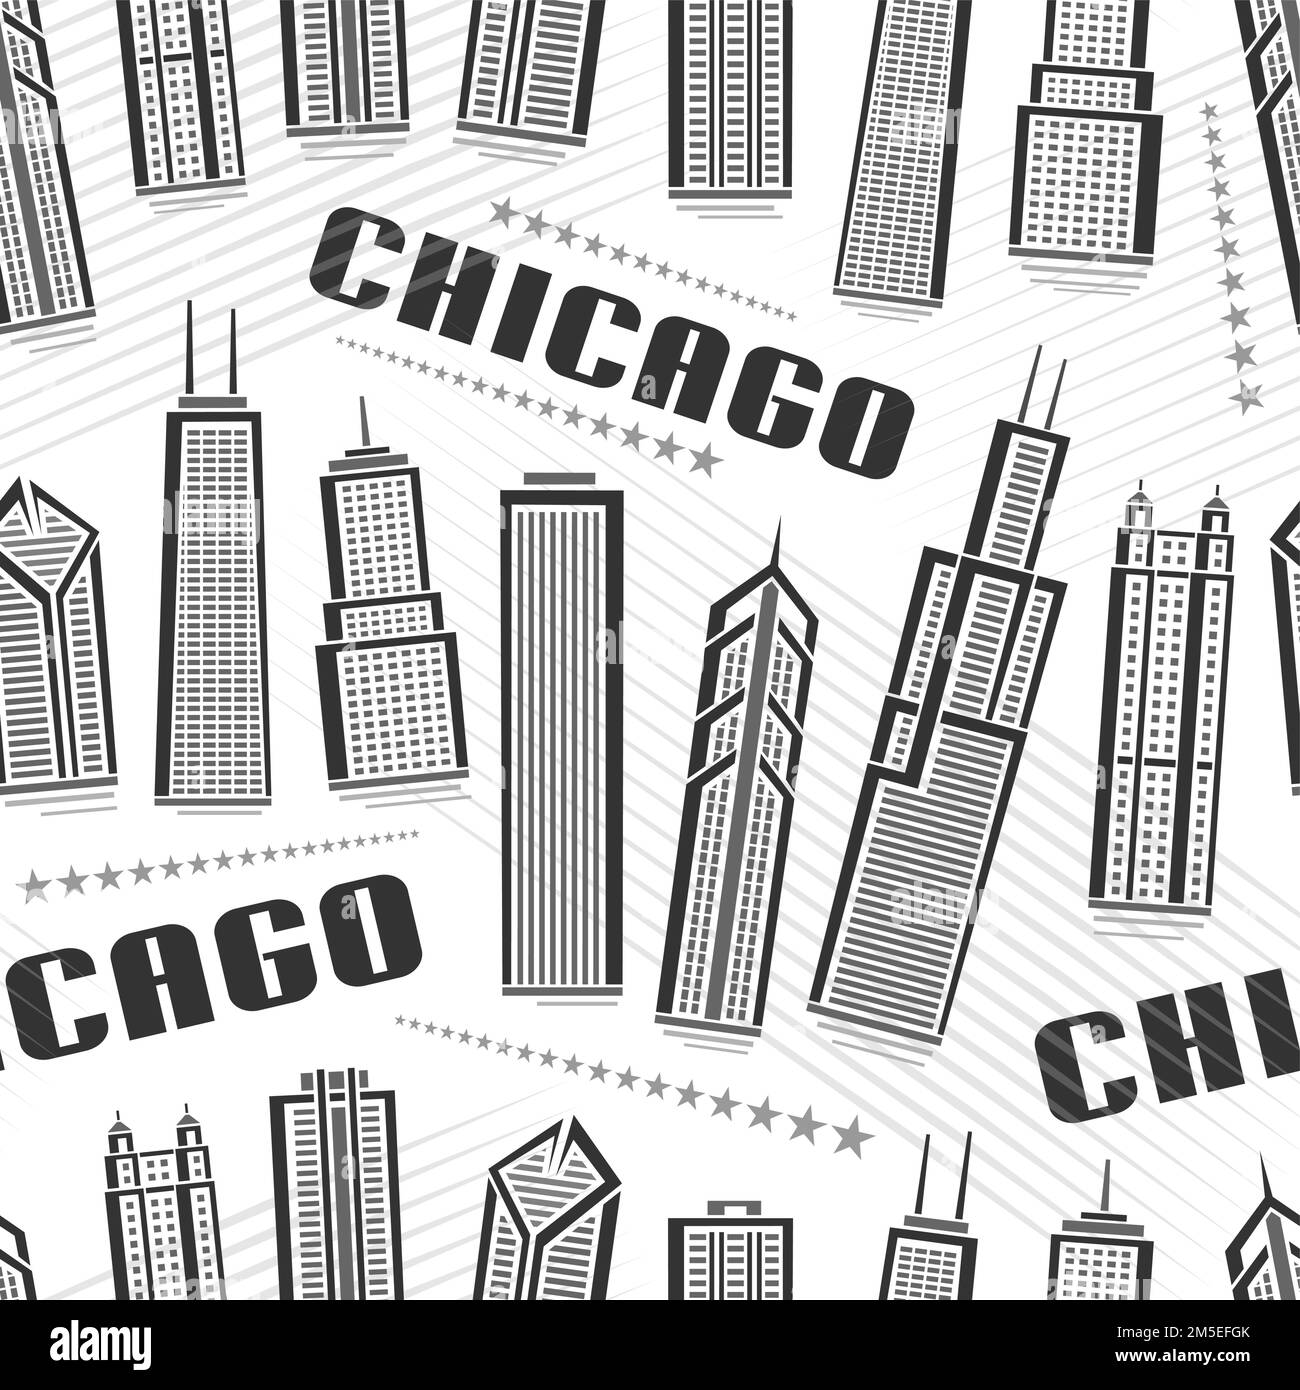 Vector Chicago Seamless Pattern, quadratischer Wiederholungshintergrund mit Illustration der berühmten chicagoer Stadtlandschaft auf weißem Hintergrund für Geschenkpapier, Monoc Stock Vektor